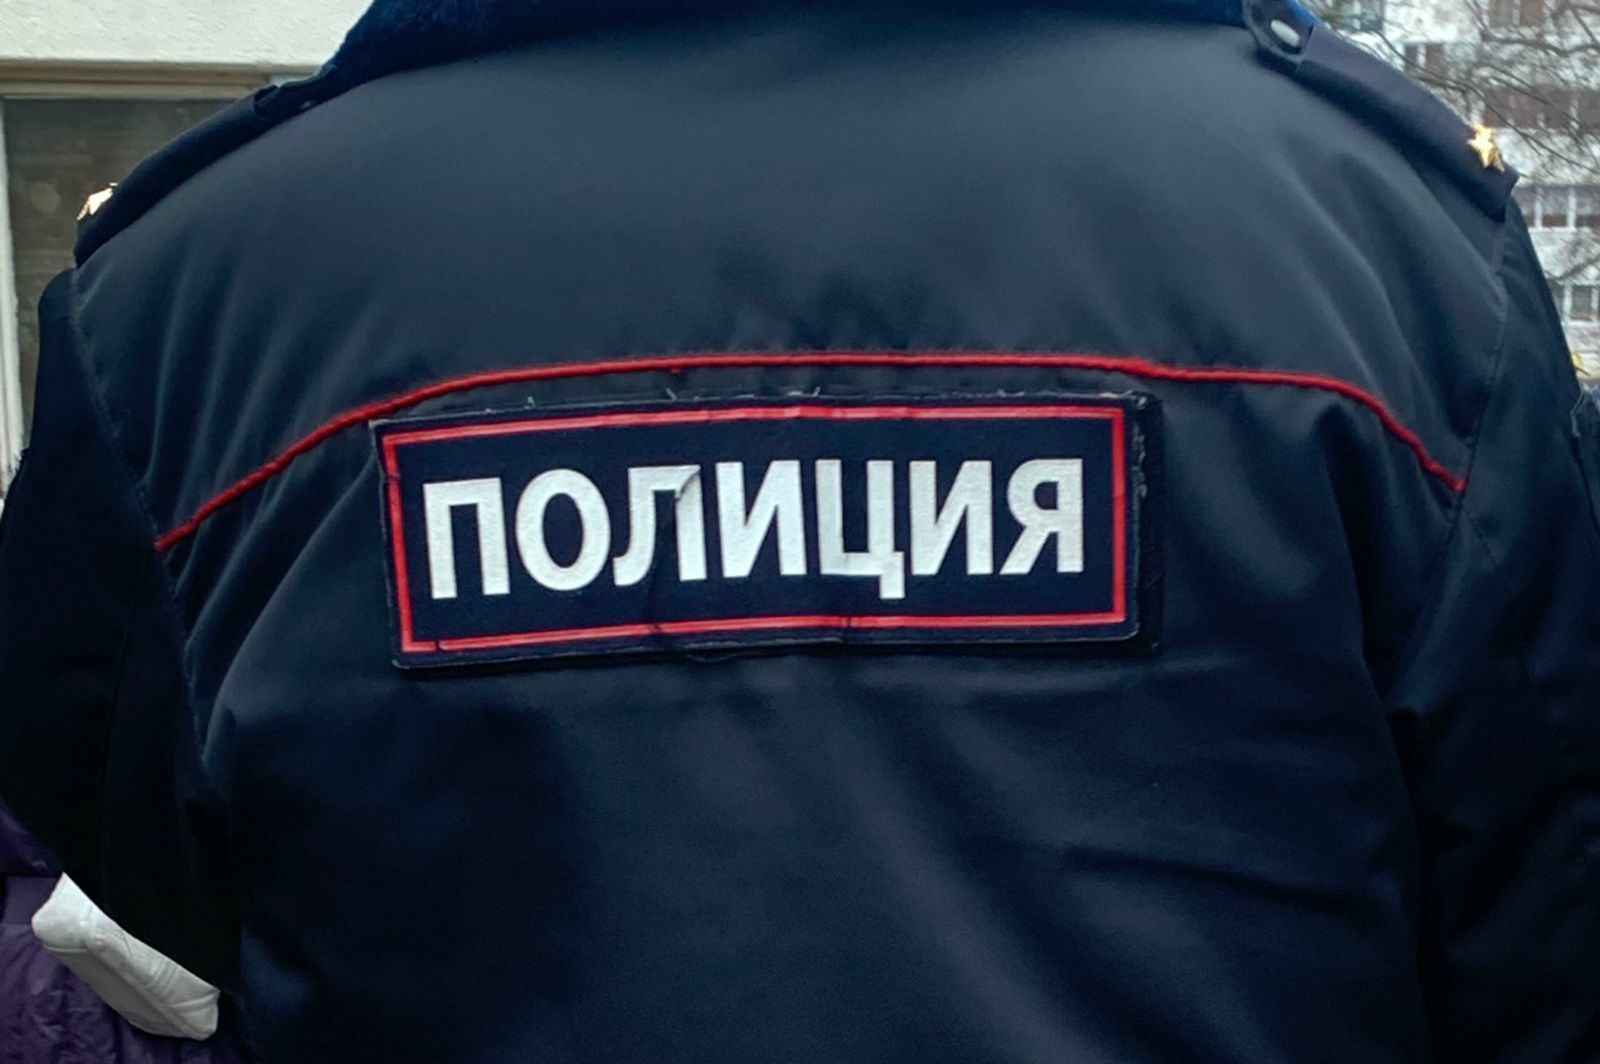 В Татарстане сотрудника ГИБДД обвиняют в получении взятки